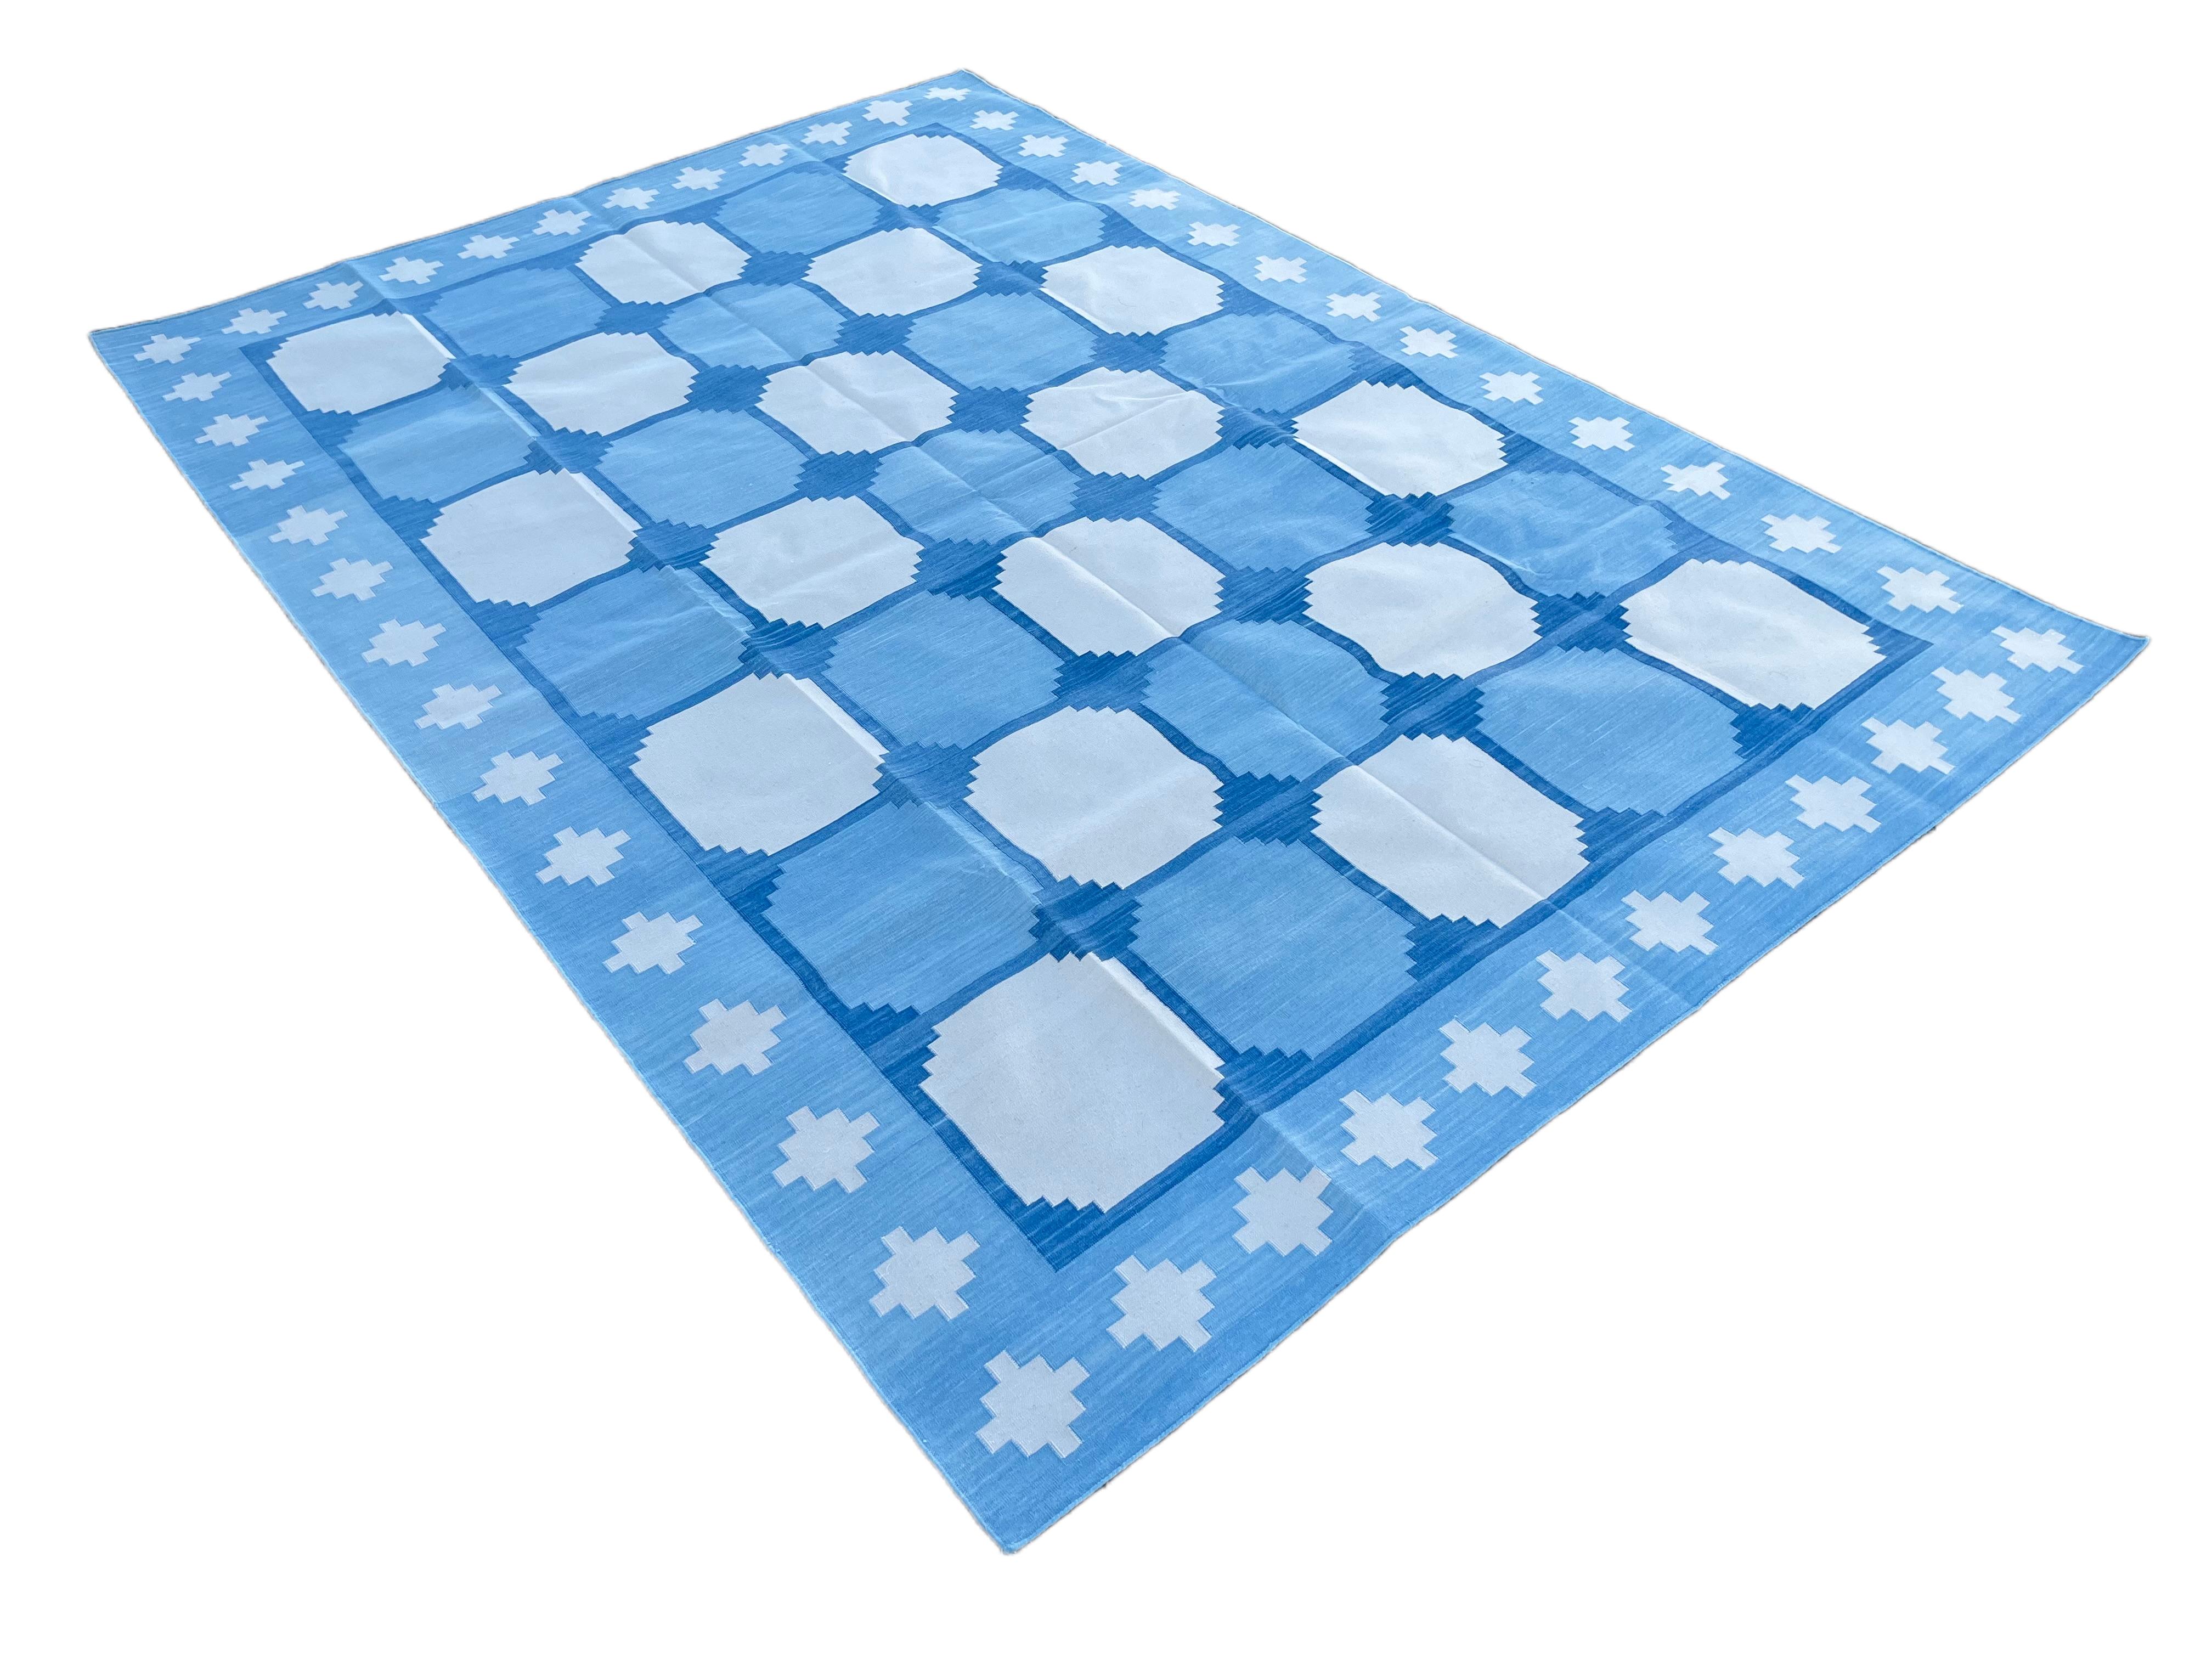 Baumwolle pflanzlich gefärbt Reversible Blau und Weiß Geometrische gemusterte Fliese indischen Teppich - 6'x9'
Diese speziellen flachgewebten Dhurries werden aus 15-fachem Garn aus 100% Baumwolle handgewebt. Aufgrund der speziellen